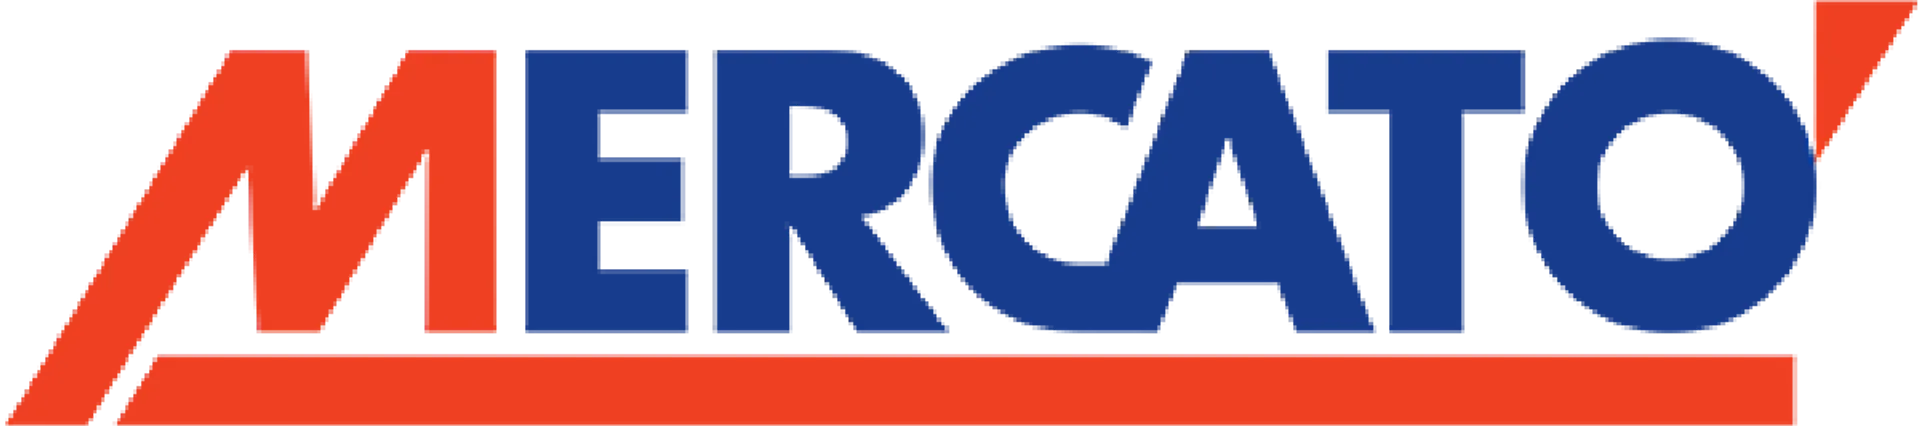 MERCATÒ SUPERSTO logo